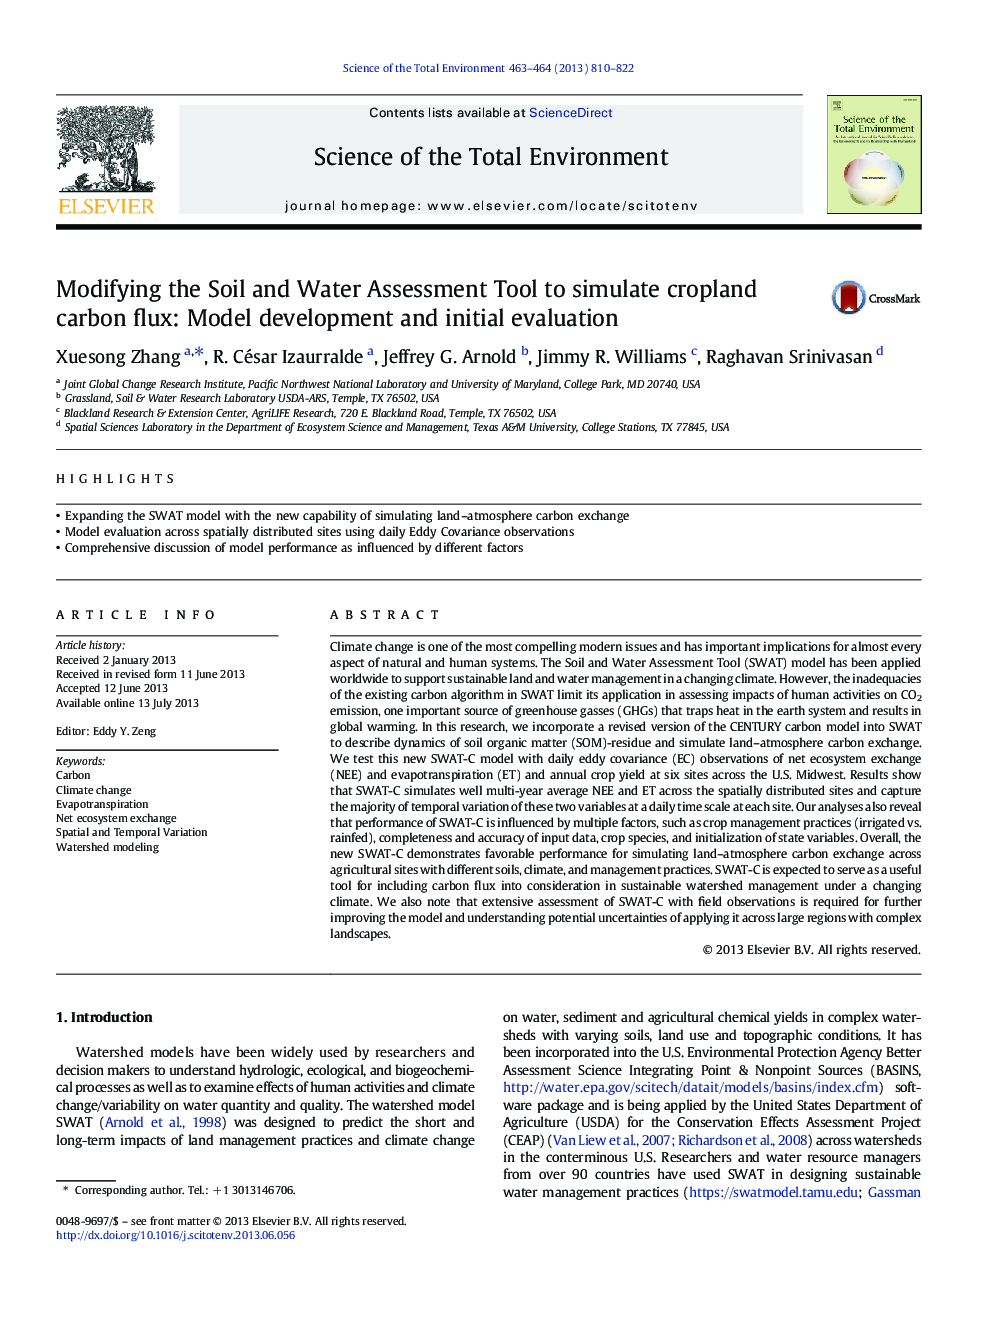 اصلاح ابزار ارزیابی خاک و آب برای شبیه سازی جریان کربن کشاورزی: ​​توسعه مدل و ارزیابی اولیه 